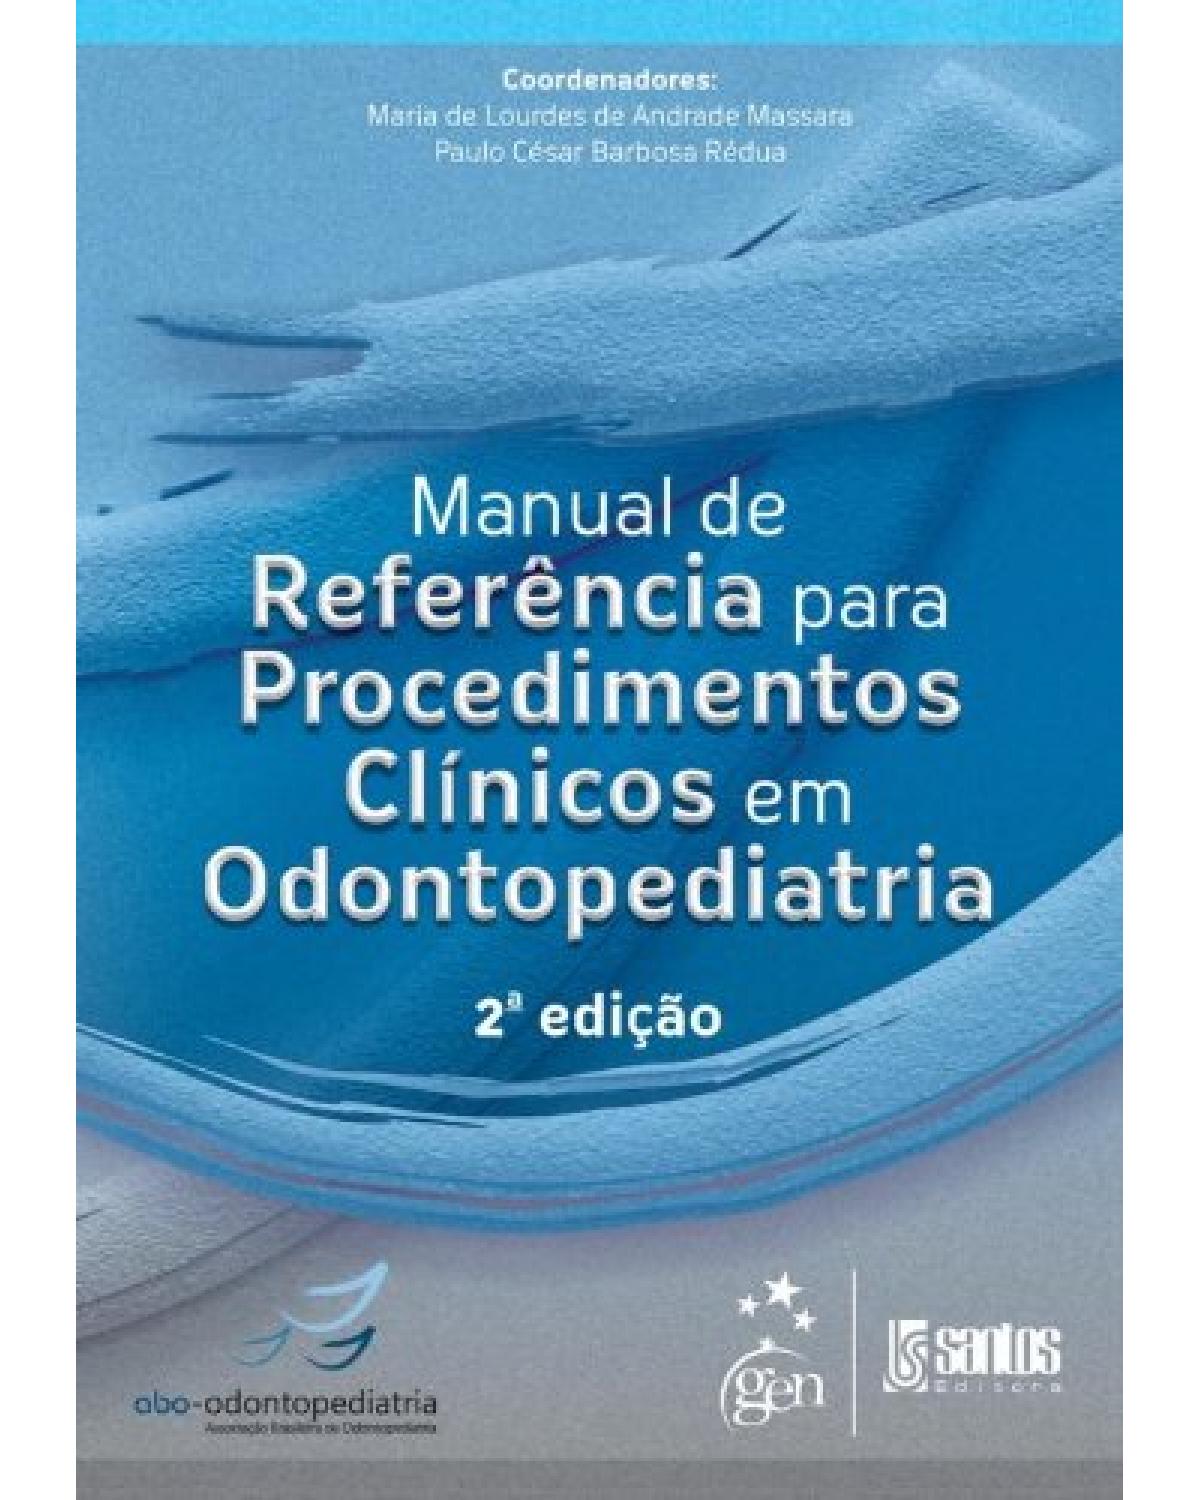 Manual de referência para procedimentos clínicos em odontopediatria - 2ª Edição | 2013